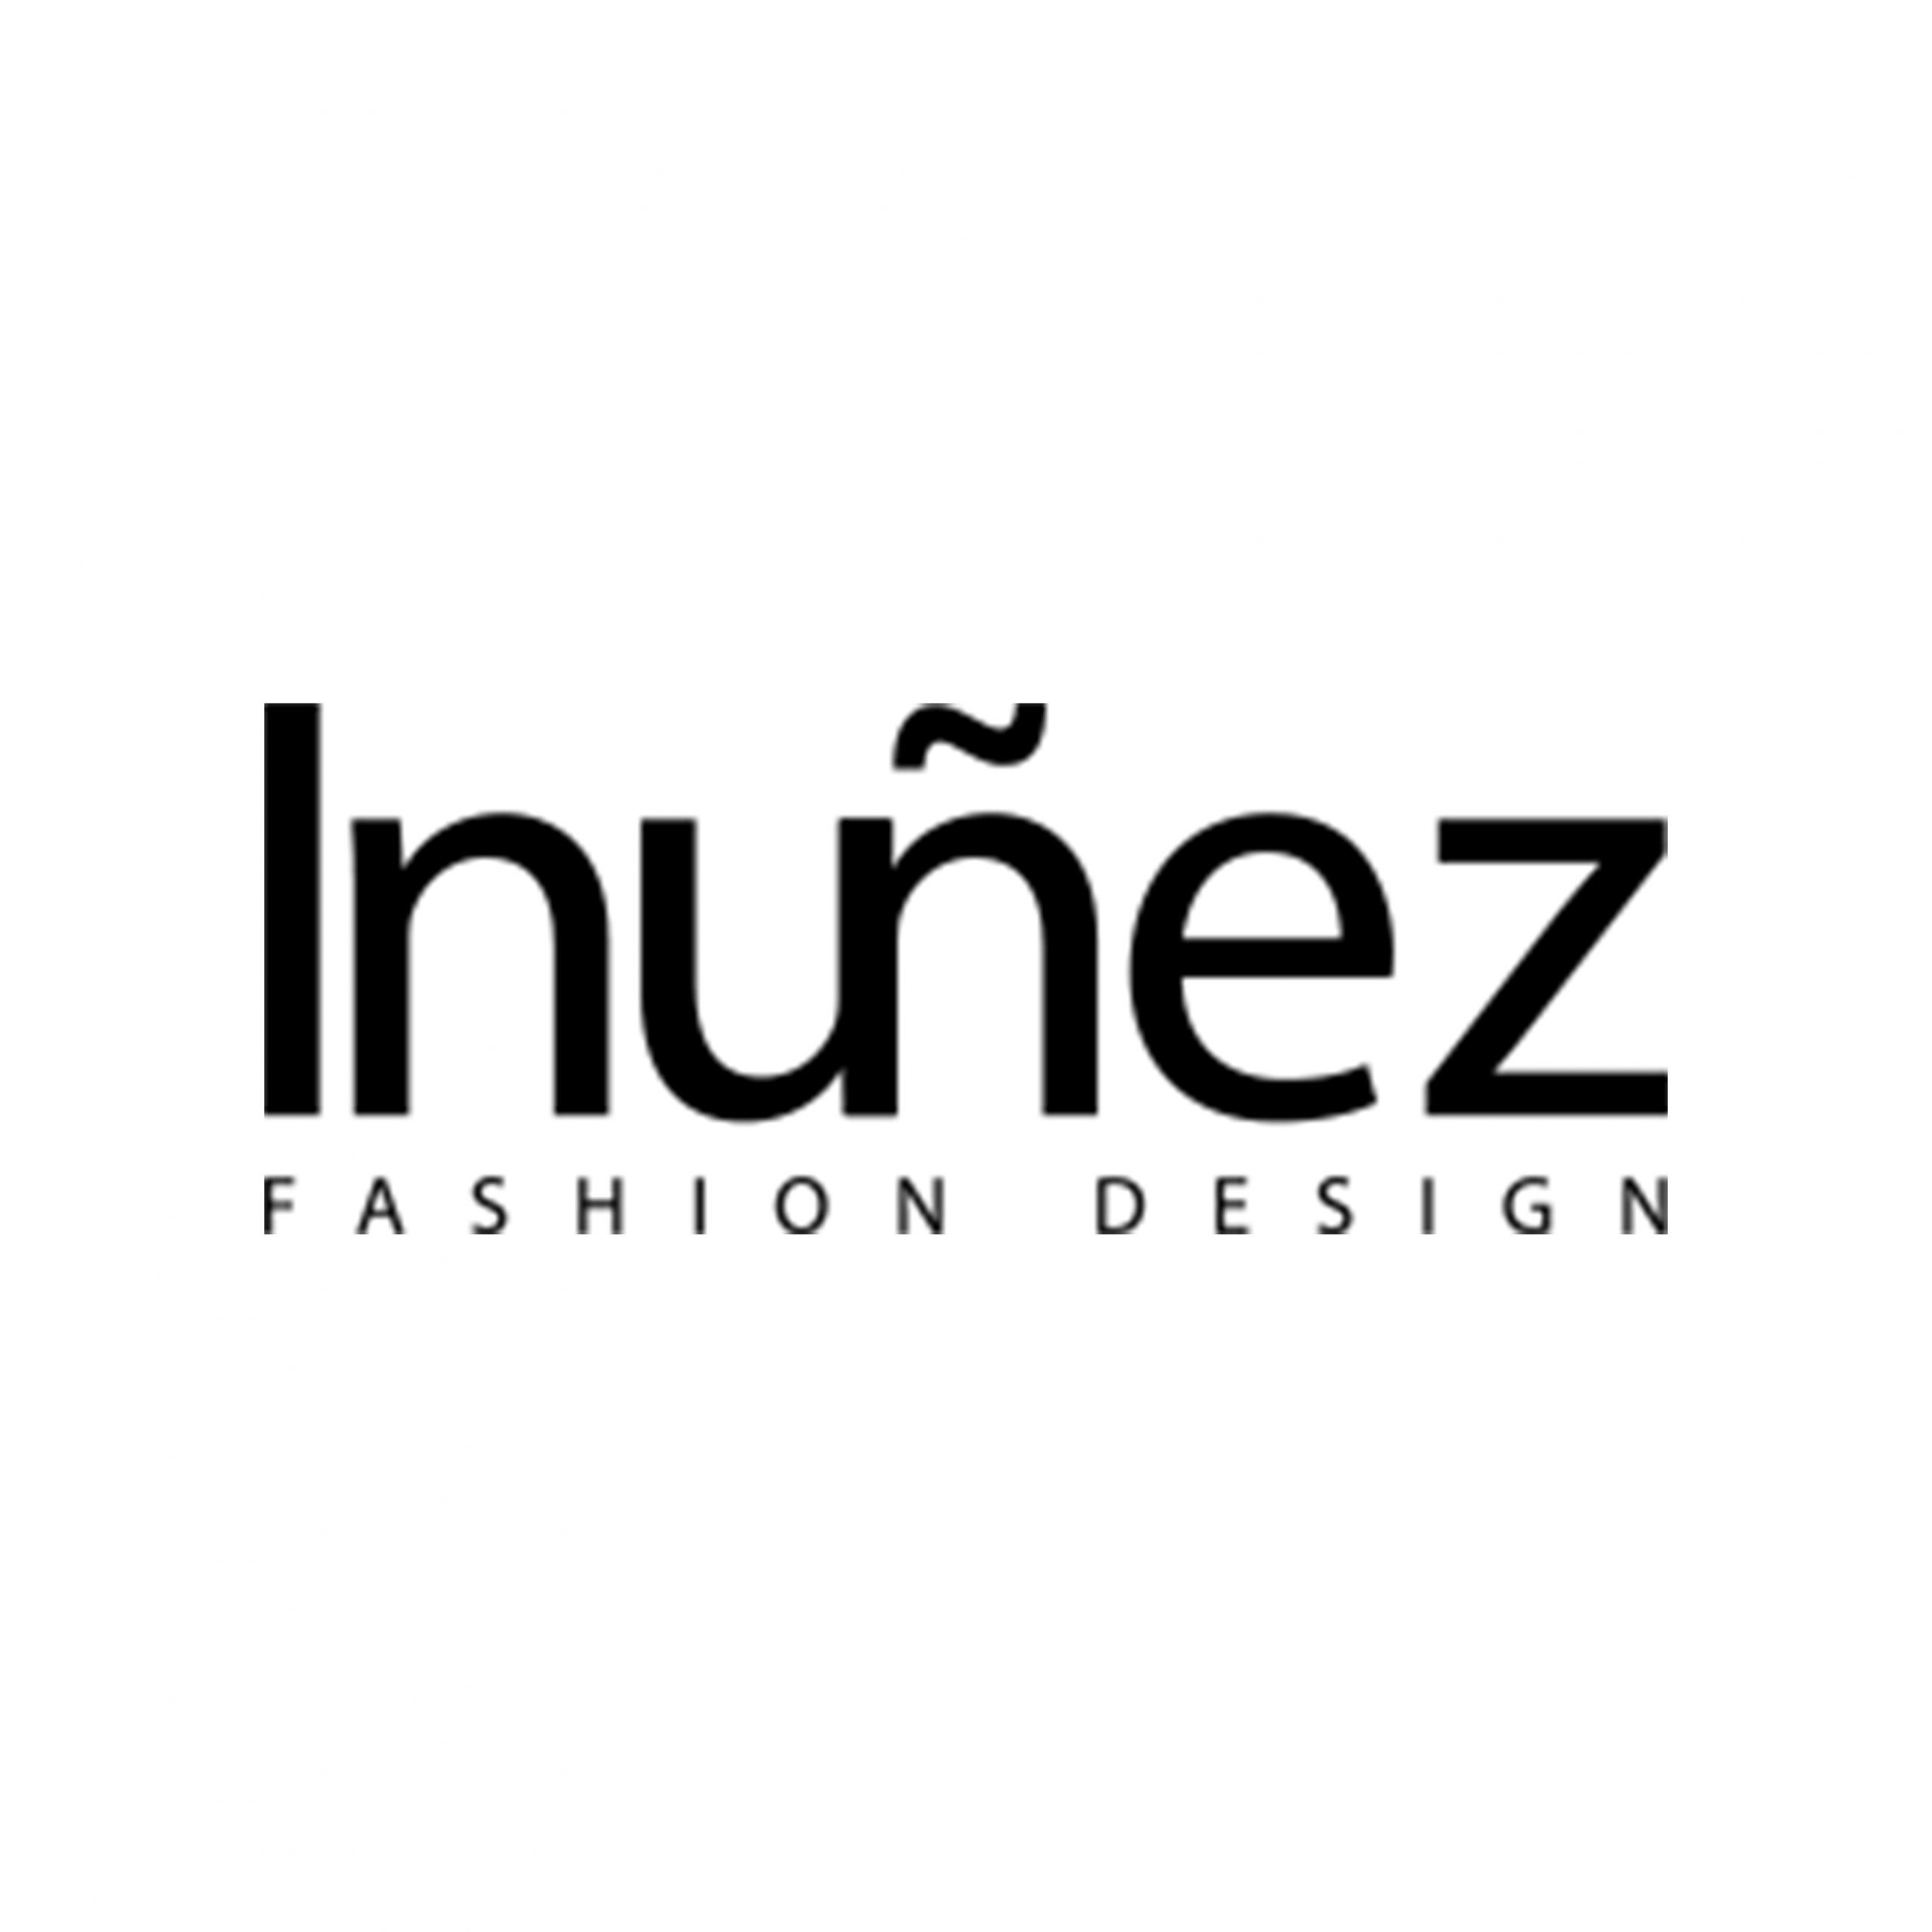 Logo INUNEZ scaled